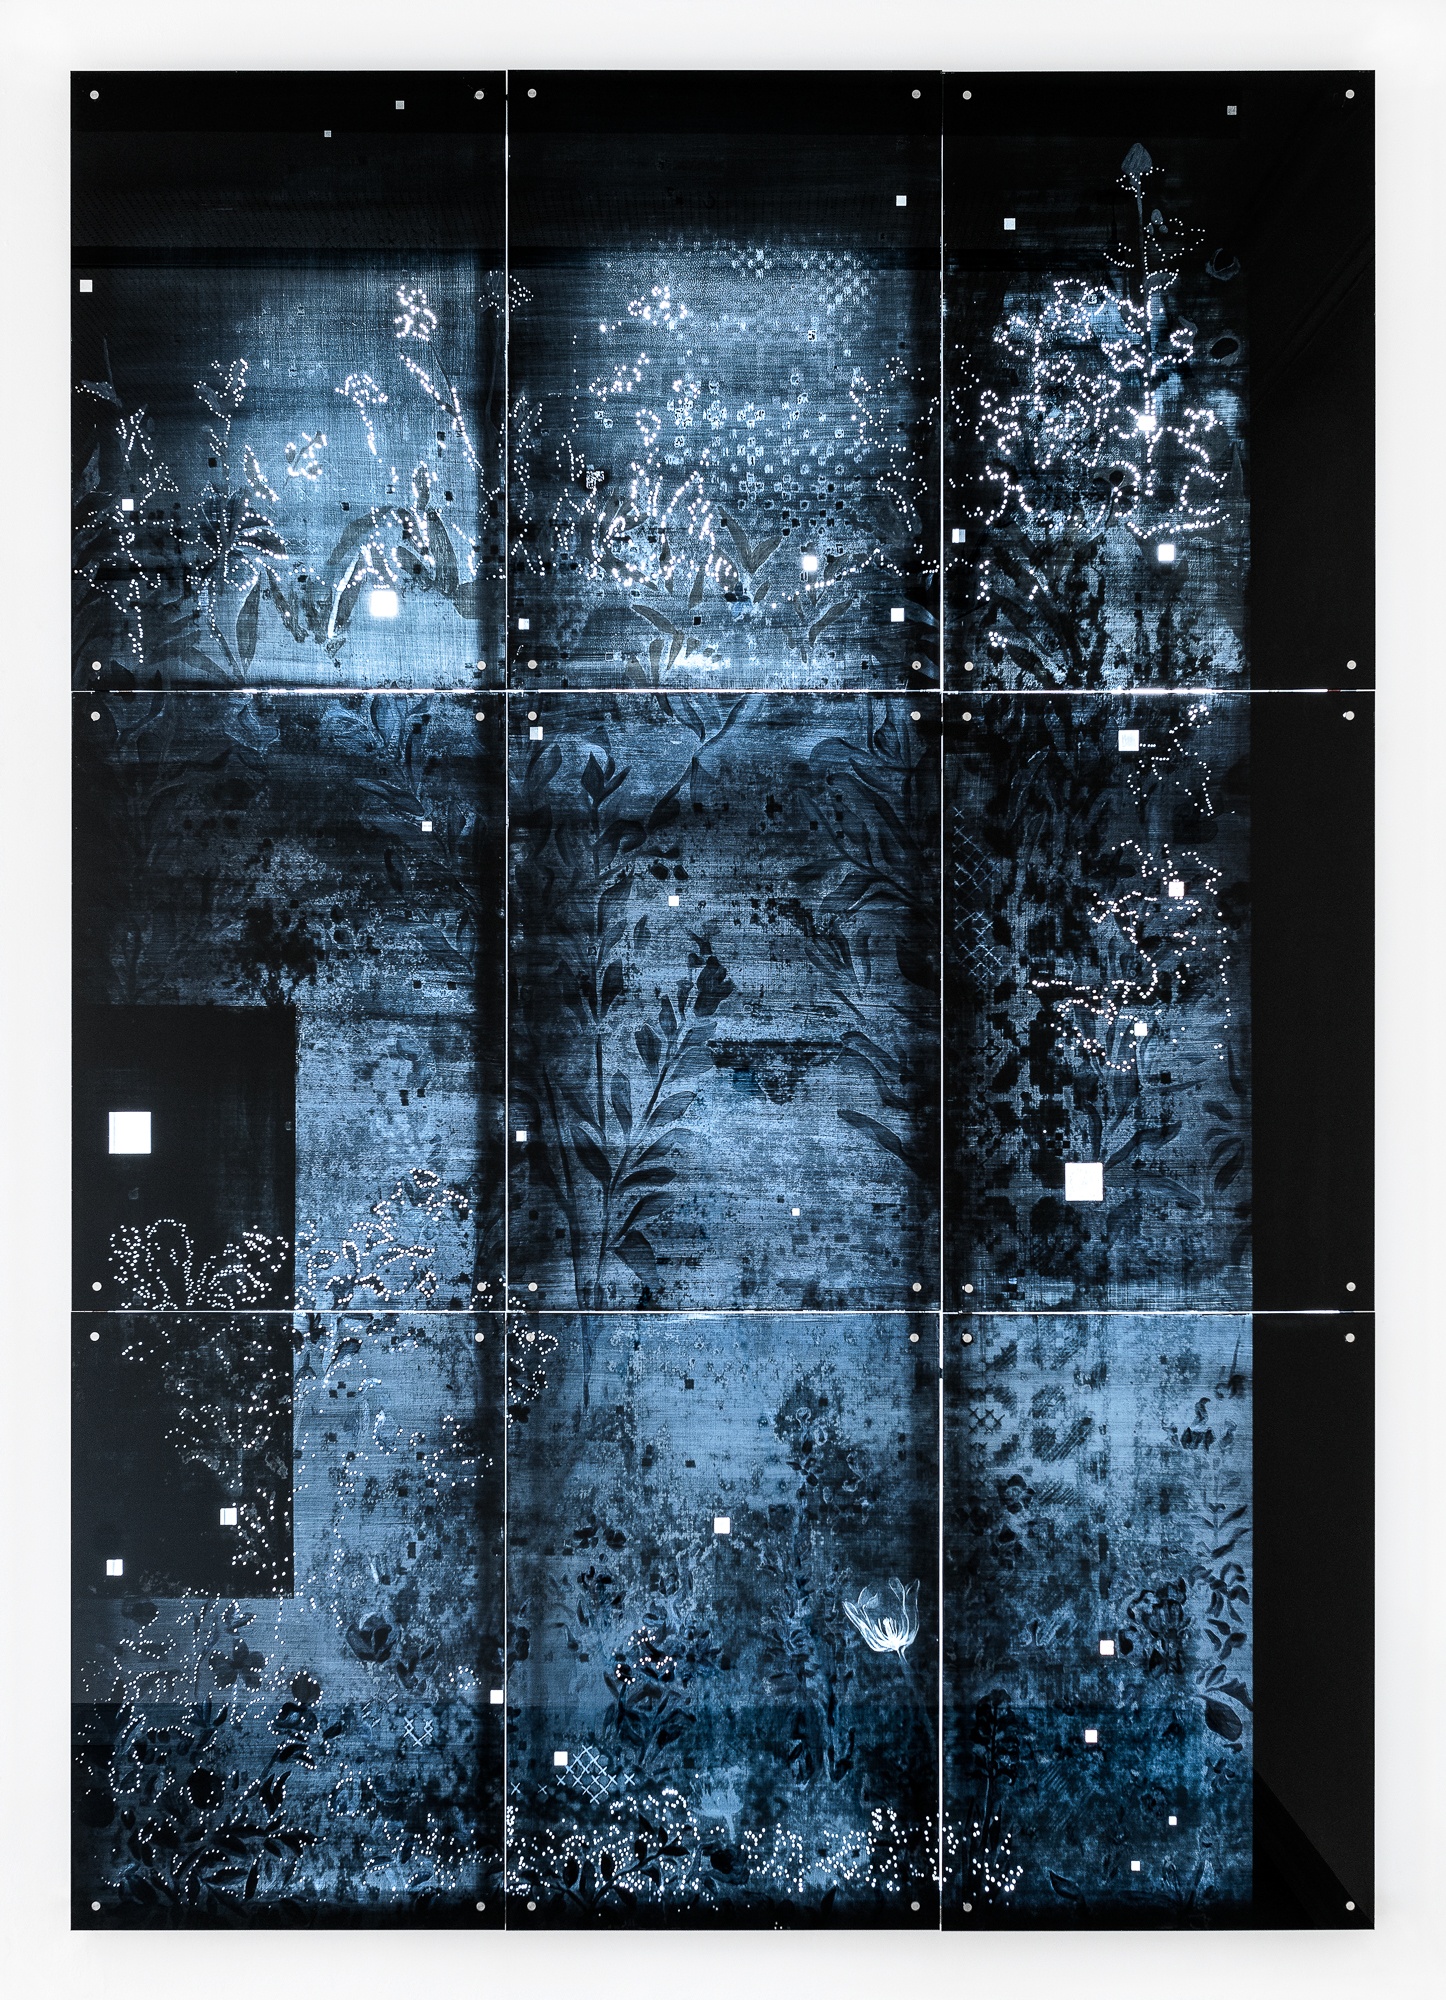 Käthe VI - 2018, UV-print and oil on glass, 114.6 x 160.6 in. / 291 x 408 cm, detail